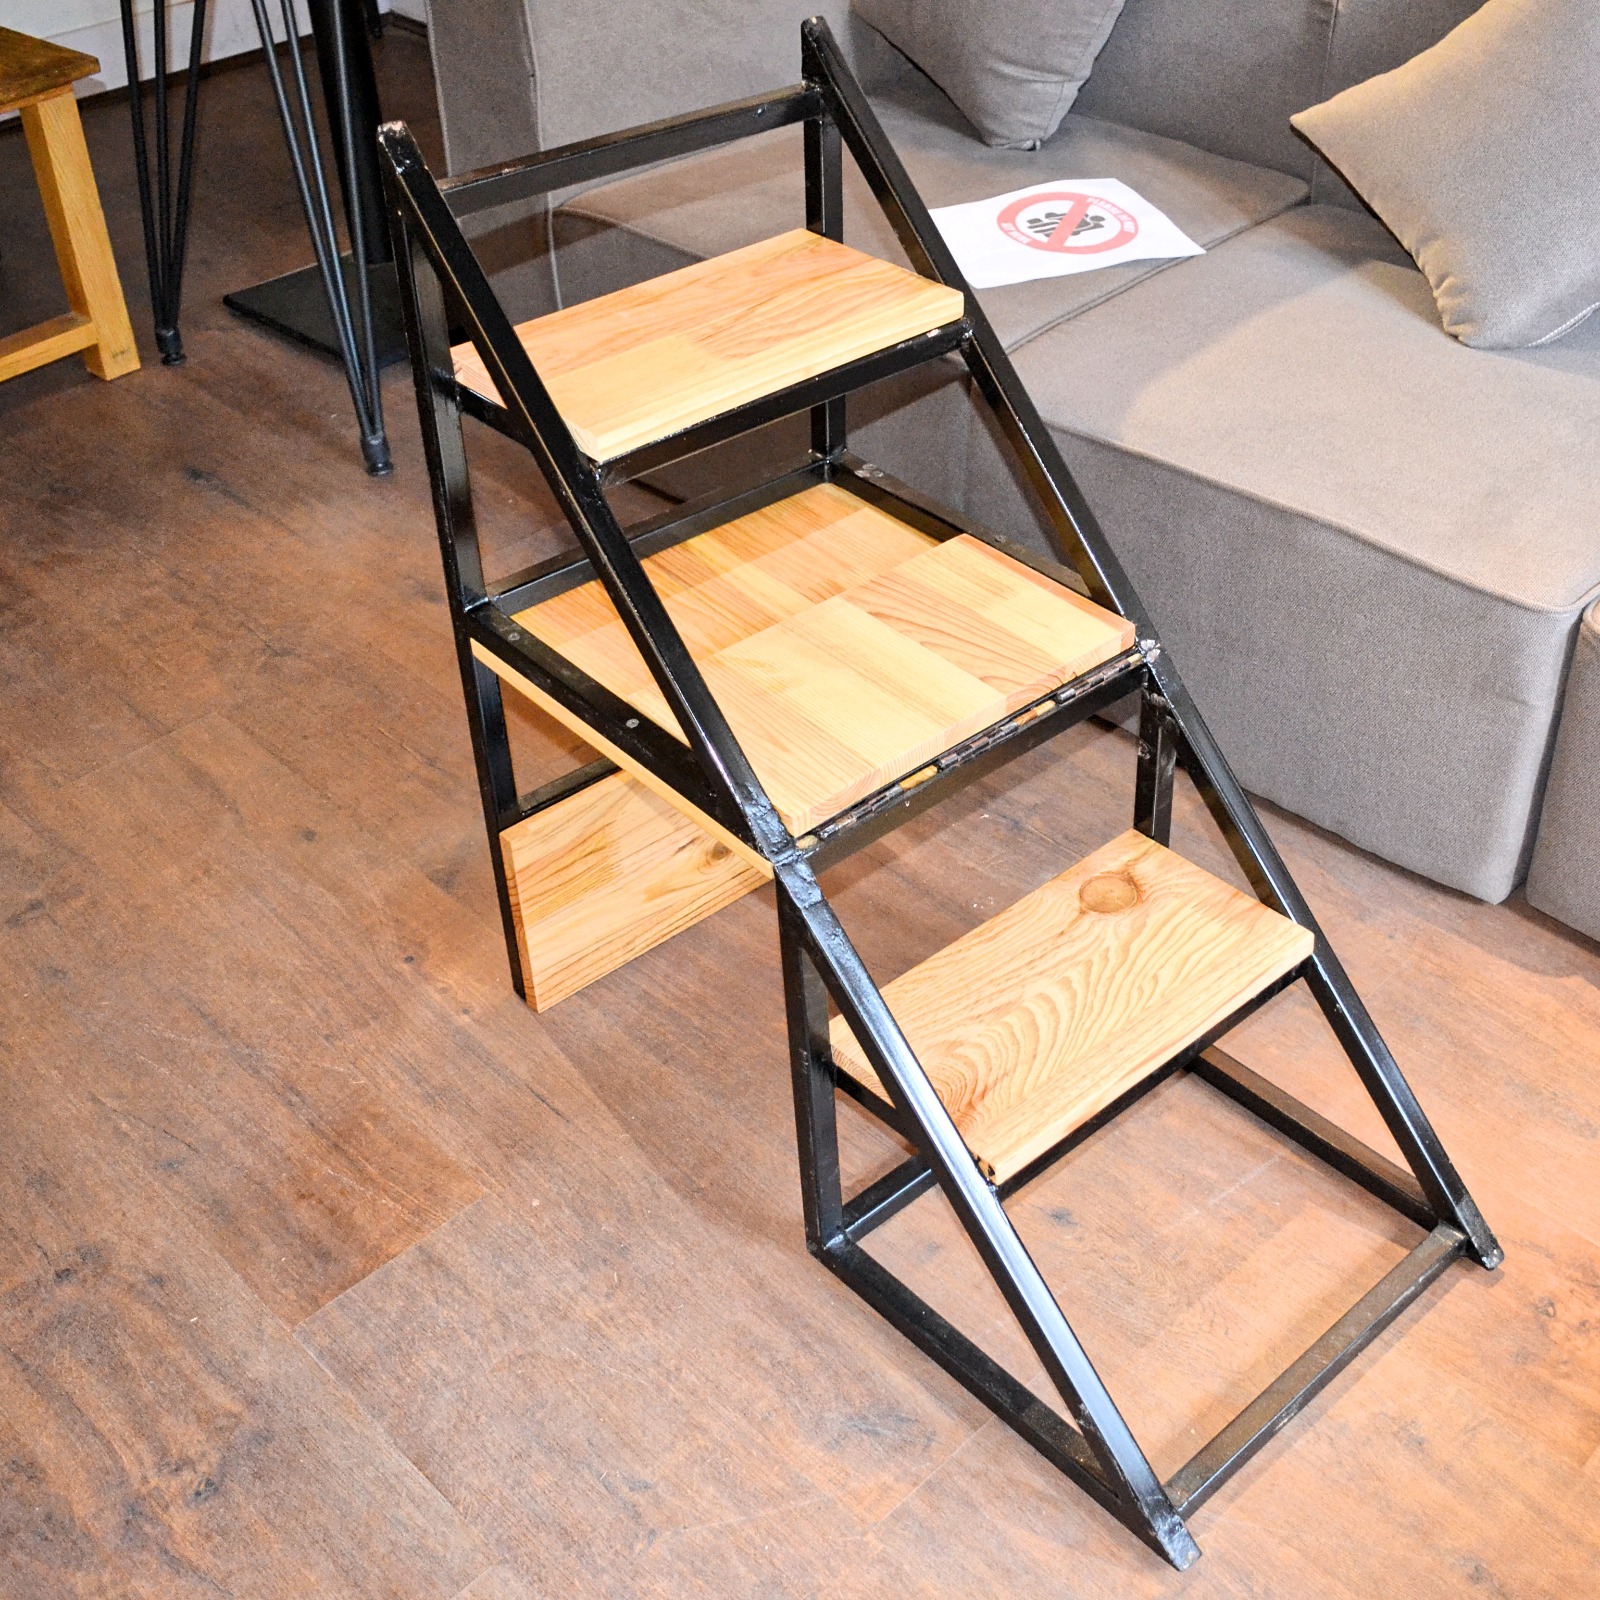 Rhinoland Foldable Ladder Chair